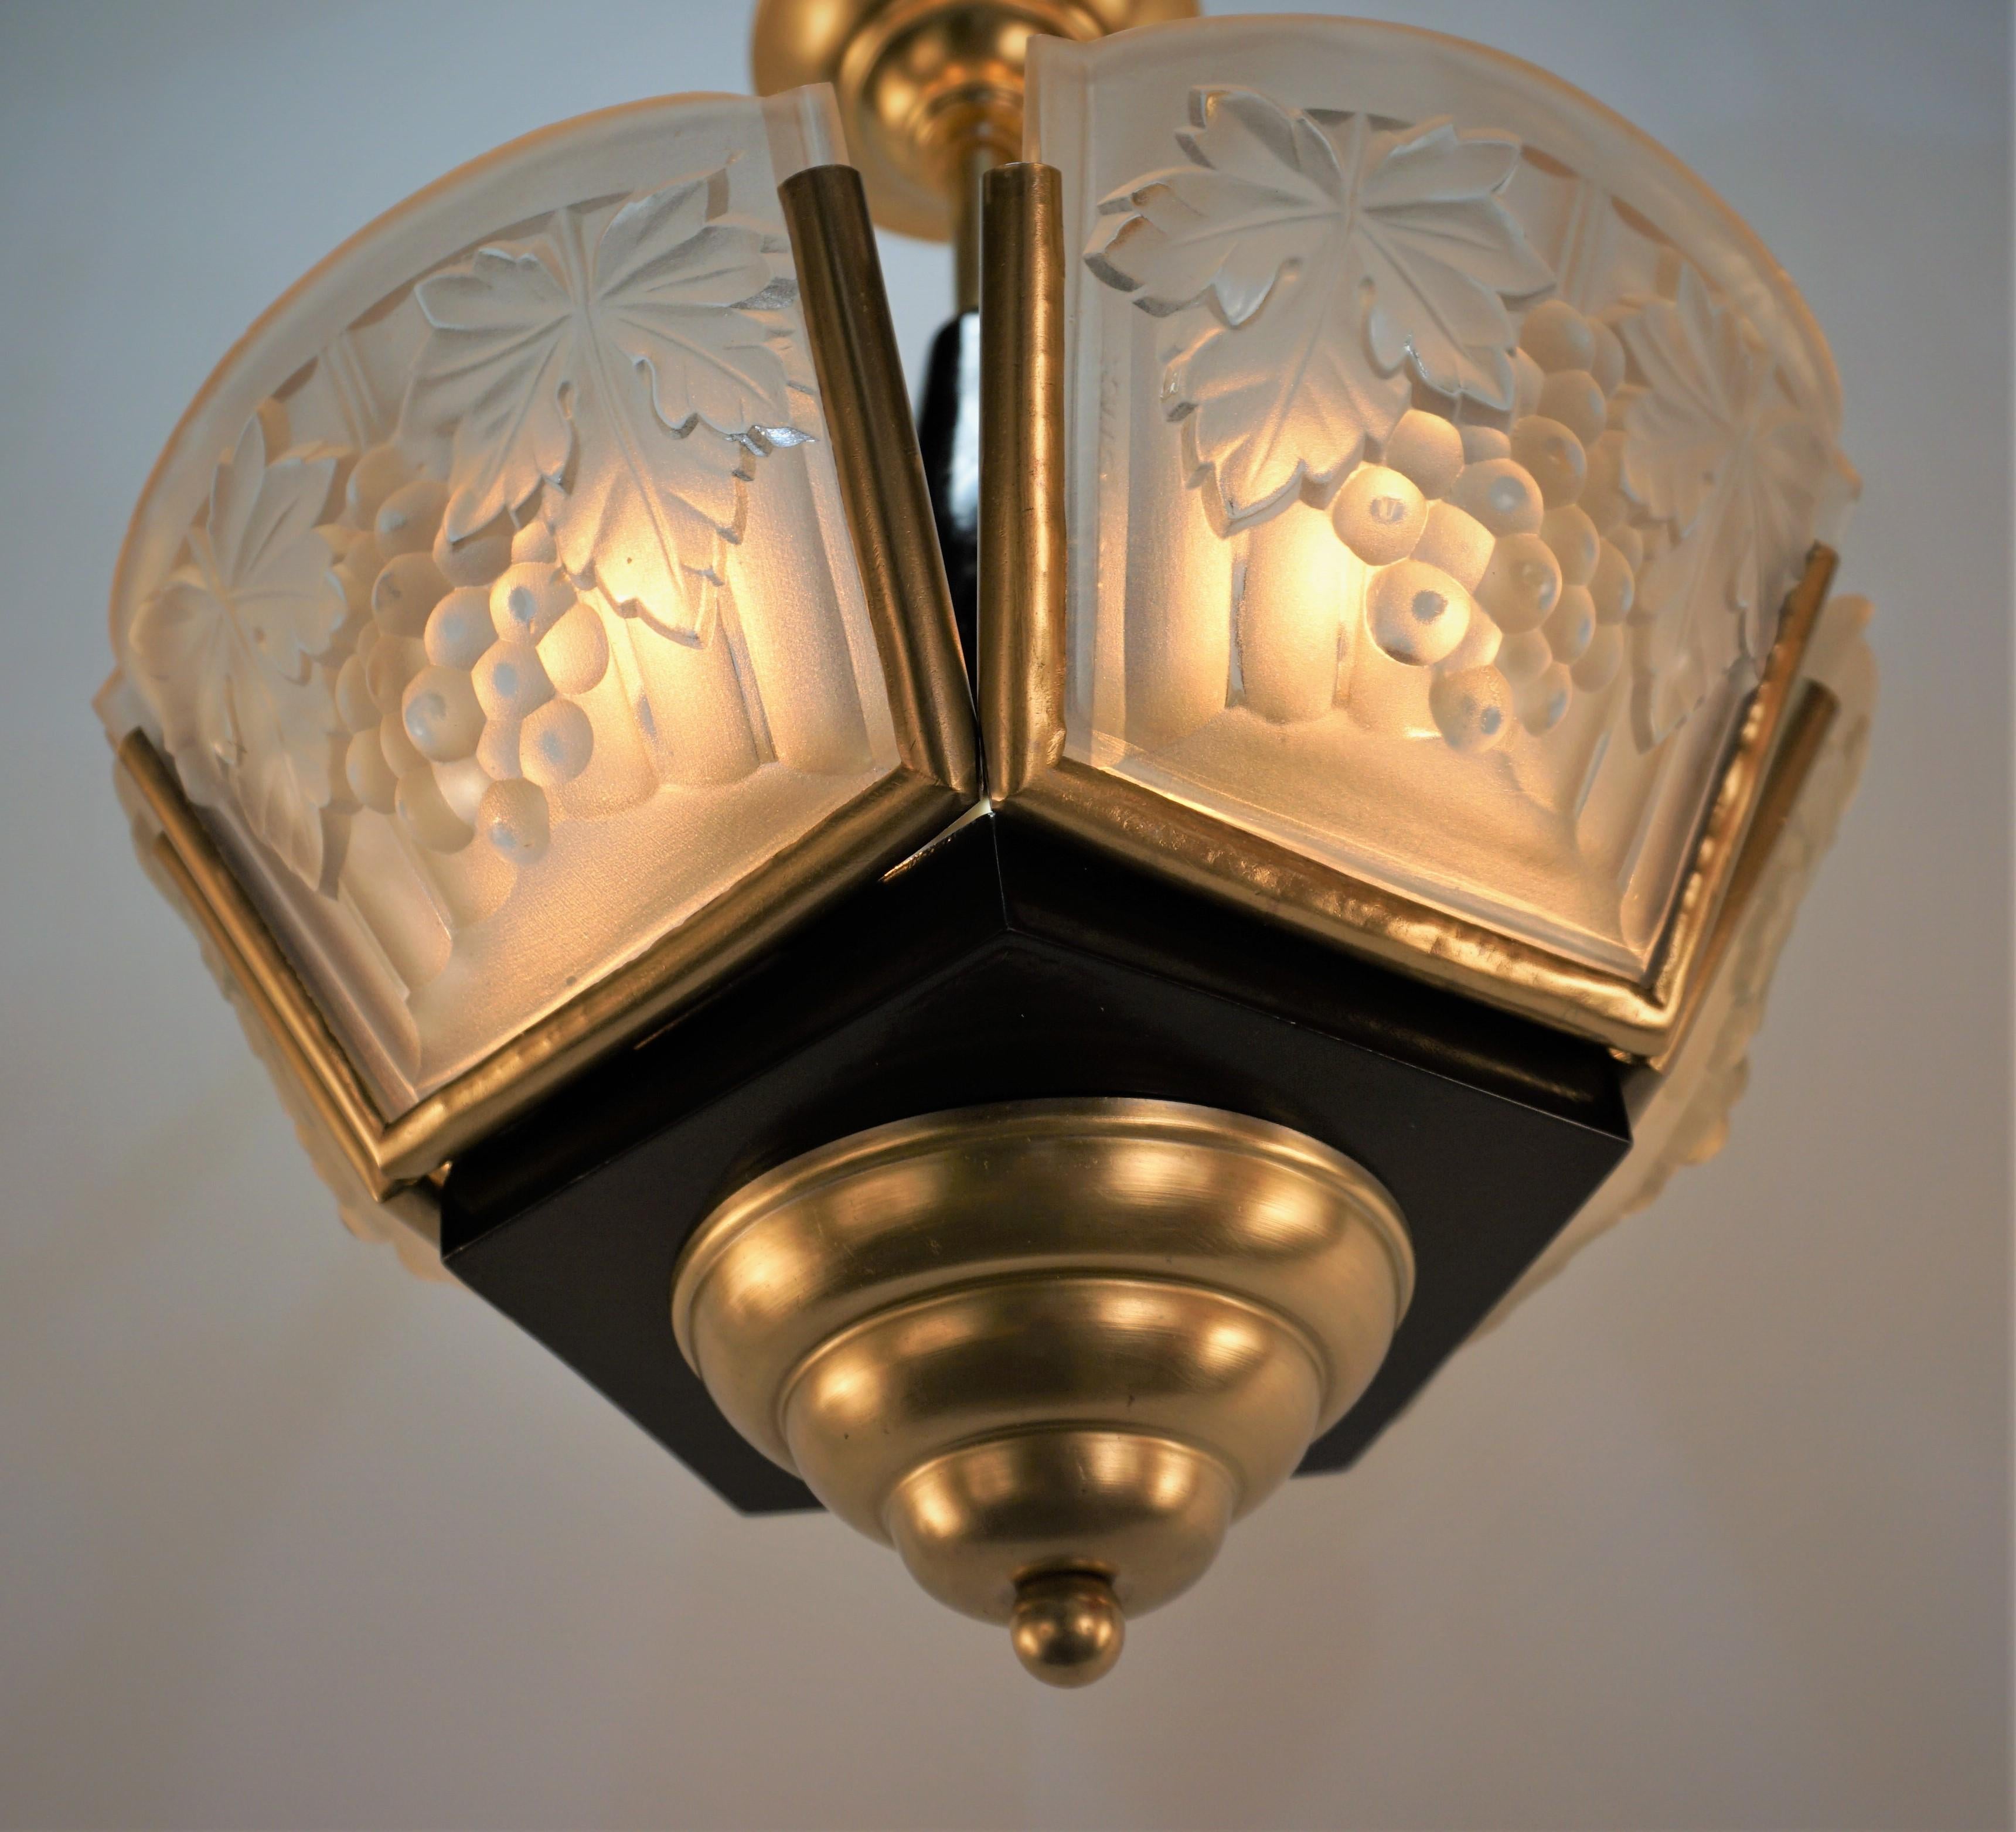 schöne fünf Platten klar Frost Glas mit Bronze und schwarz lackiertem Holz Französisch 1930's Art Deco-Kronleuchter.
Professionell neu verkabelt und einbaufertig.
5 Leuchten mit je maximal 100 Watt. 